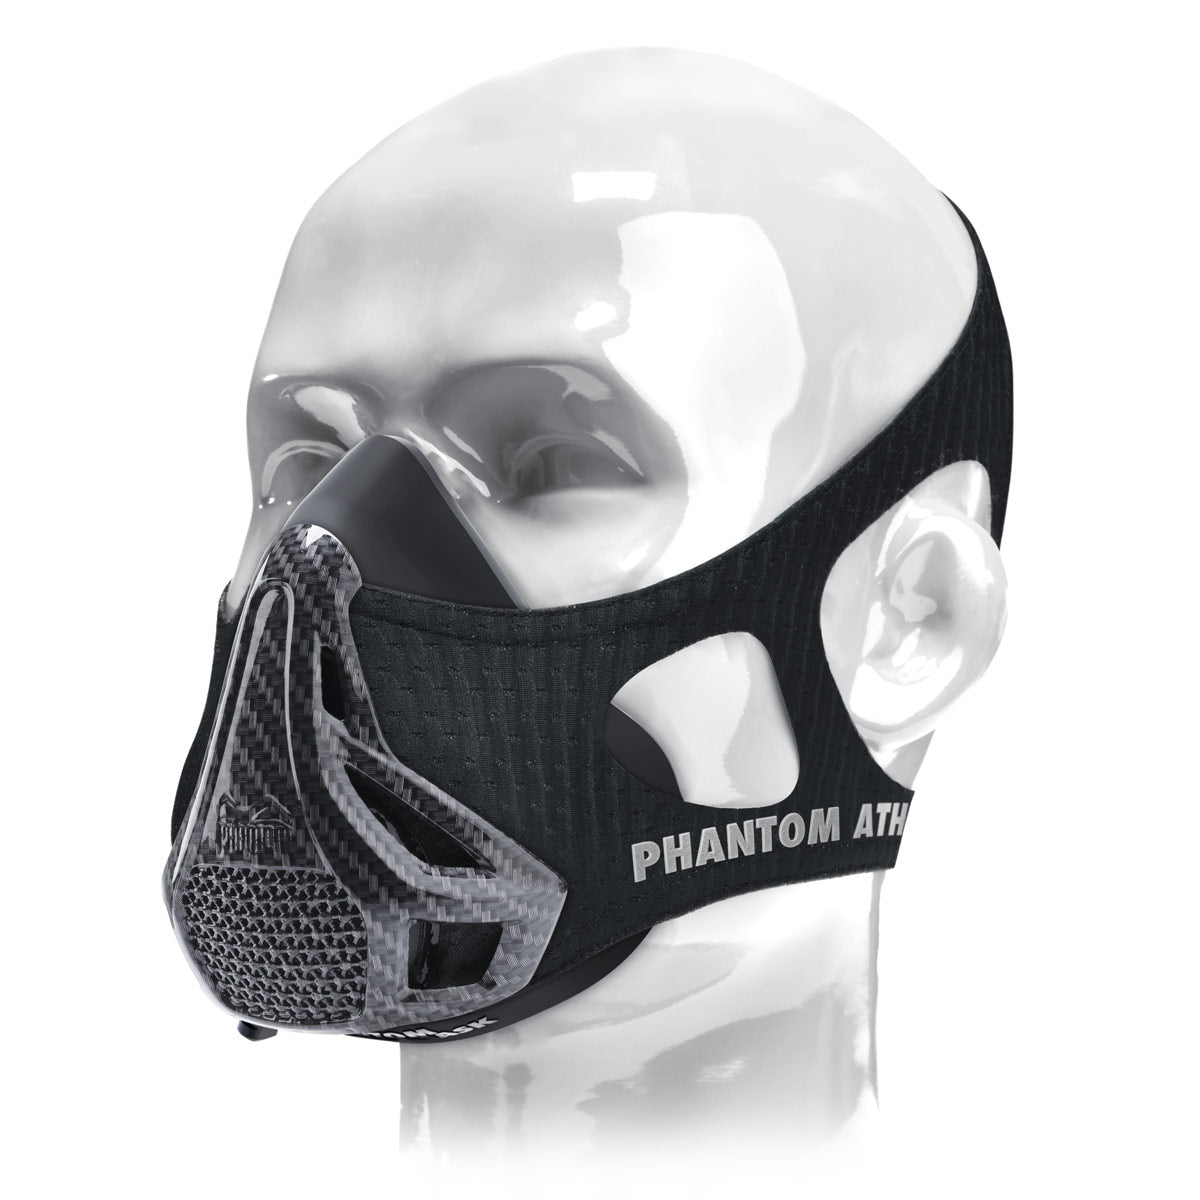 Le masque d'entraînement Phantom . L'original. Breveté et récompensé pour faire passer votre condition physique au niveau supérieur. Maintenant dans l'édition limitée Carbon.